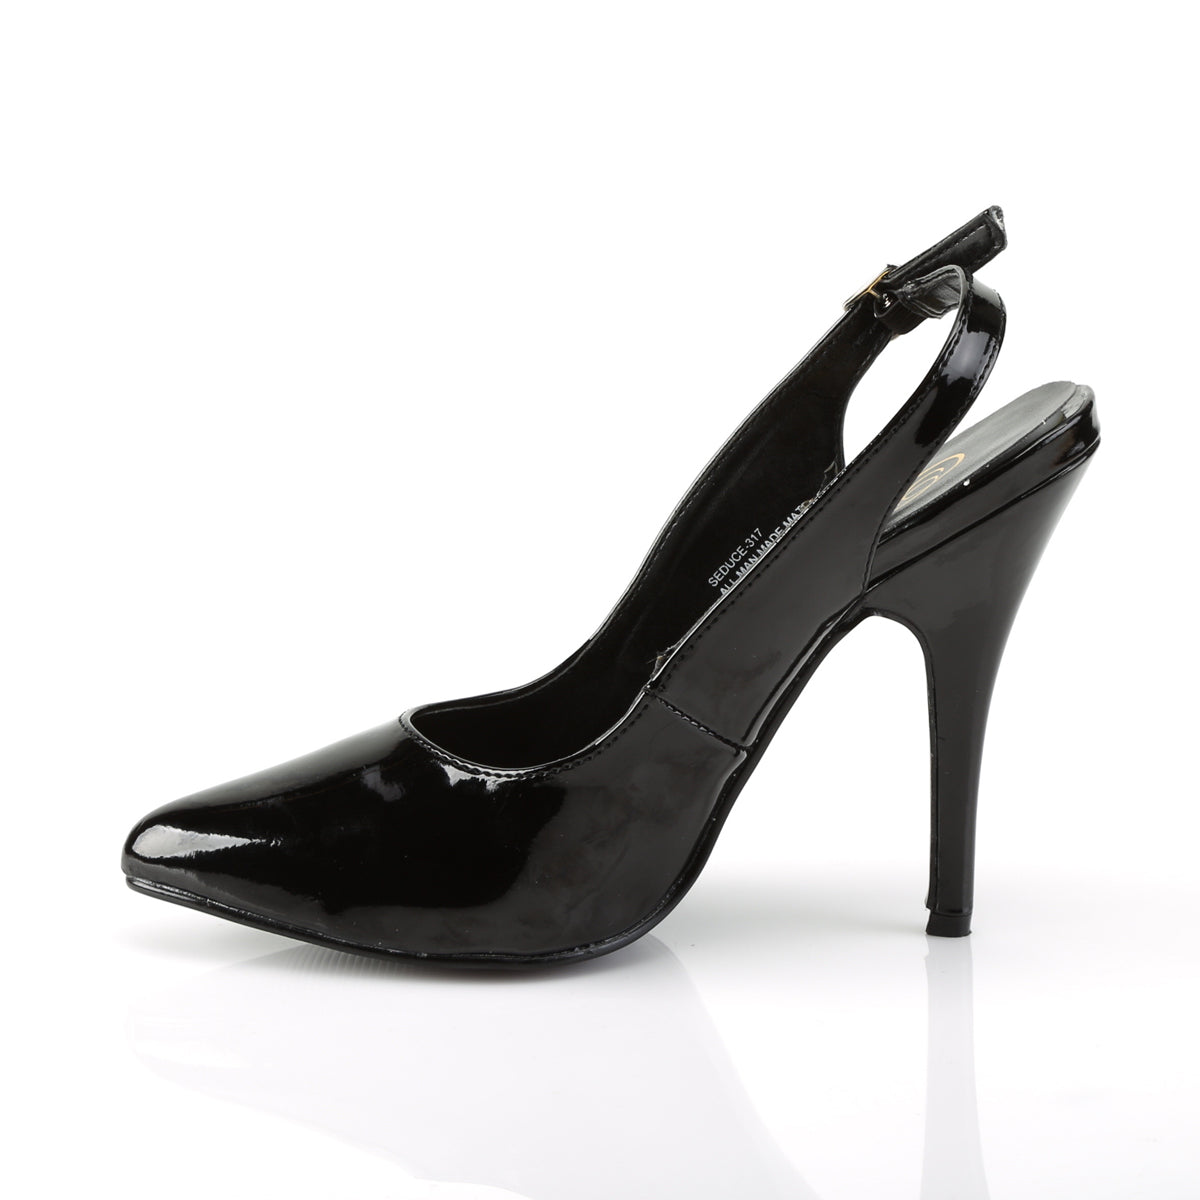 SEDUCE-317 Pleaser Shoe 5" Heel Black Patent Fetish Footwear-Pleaser- Sexy Shoes Pole Dance Heels